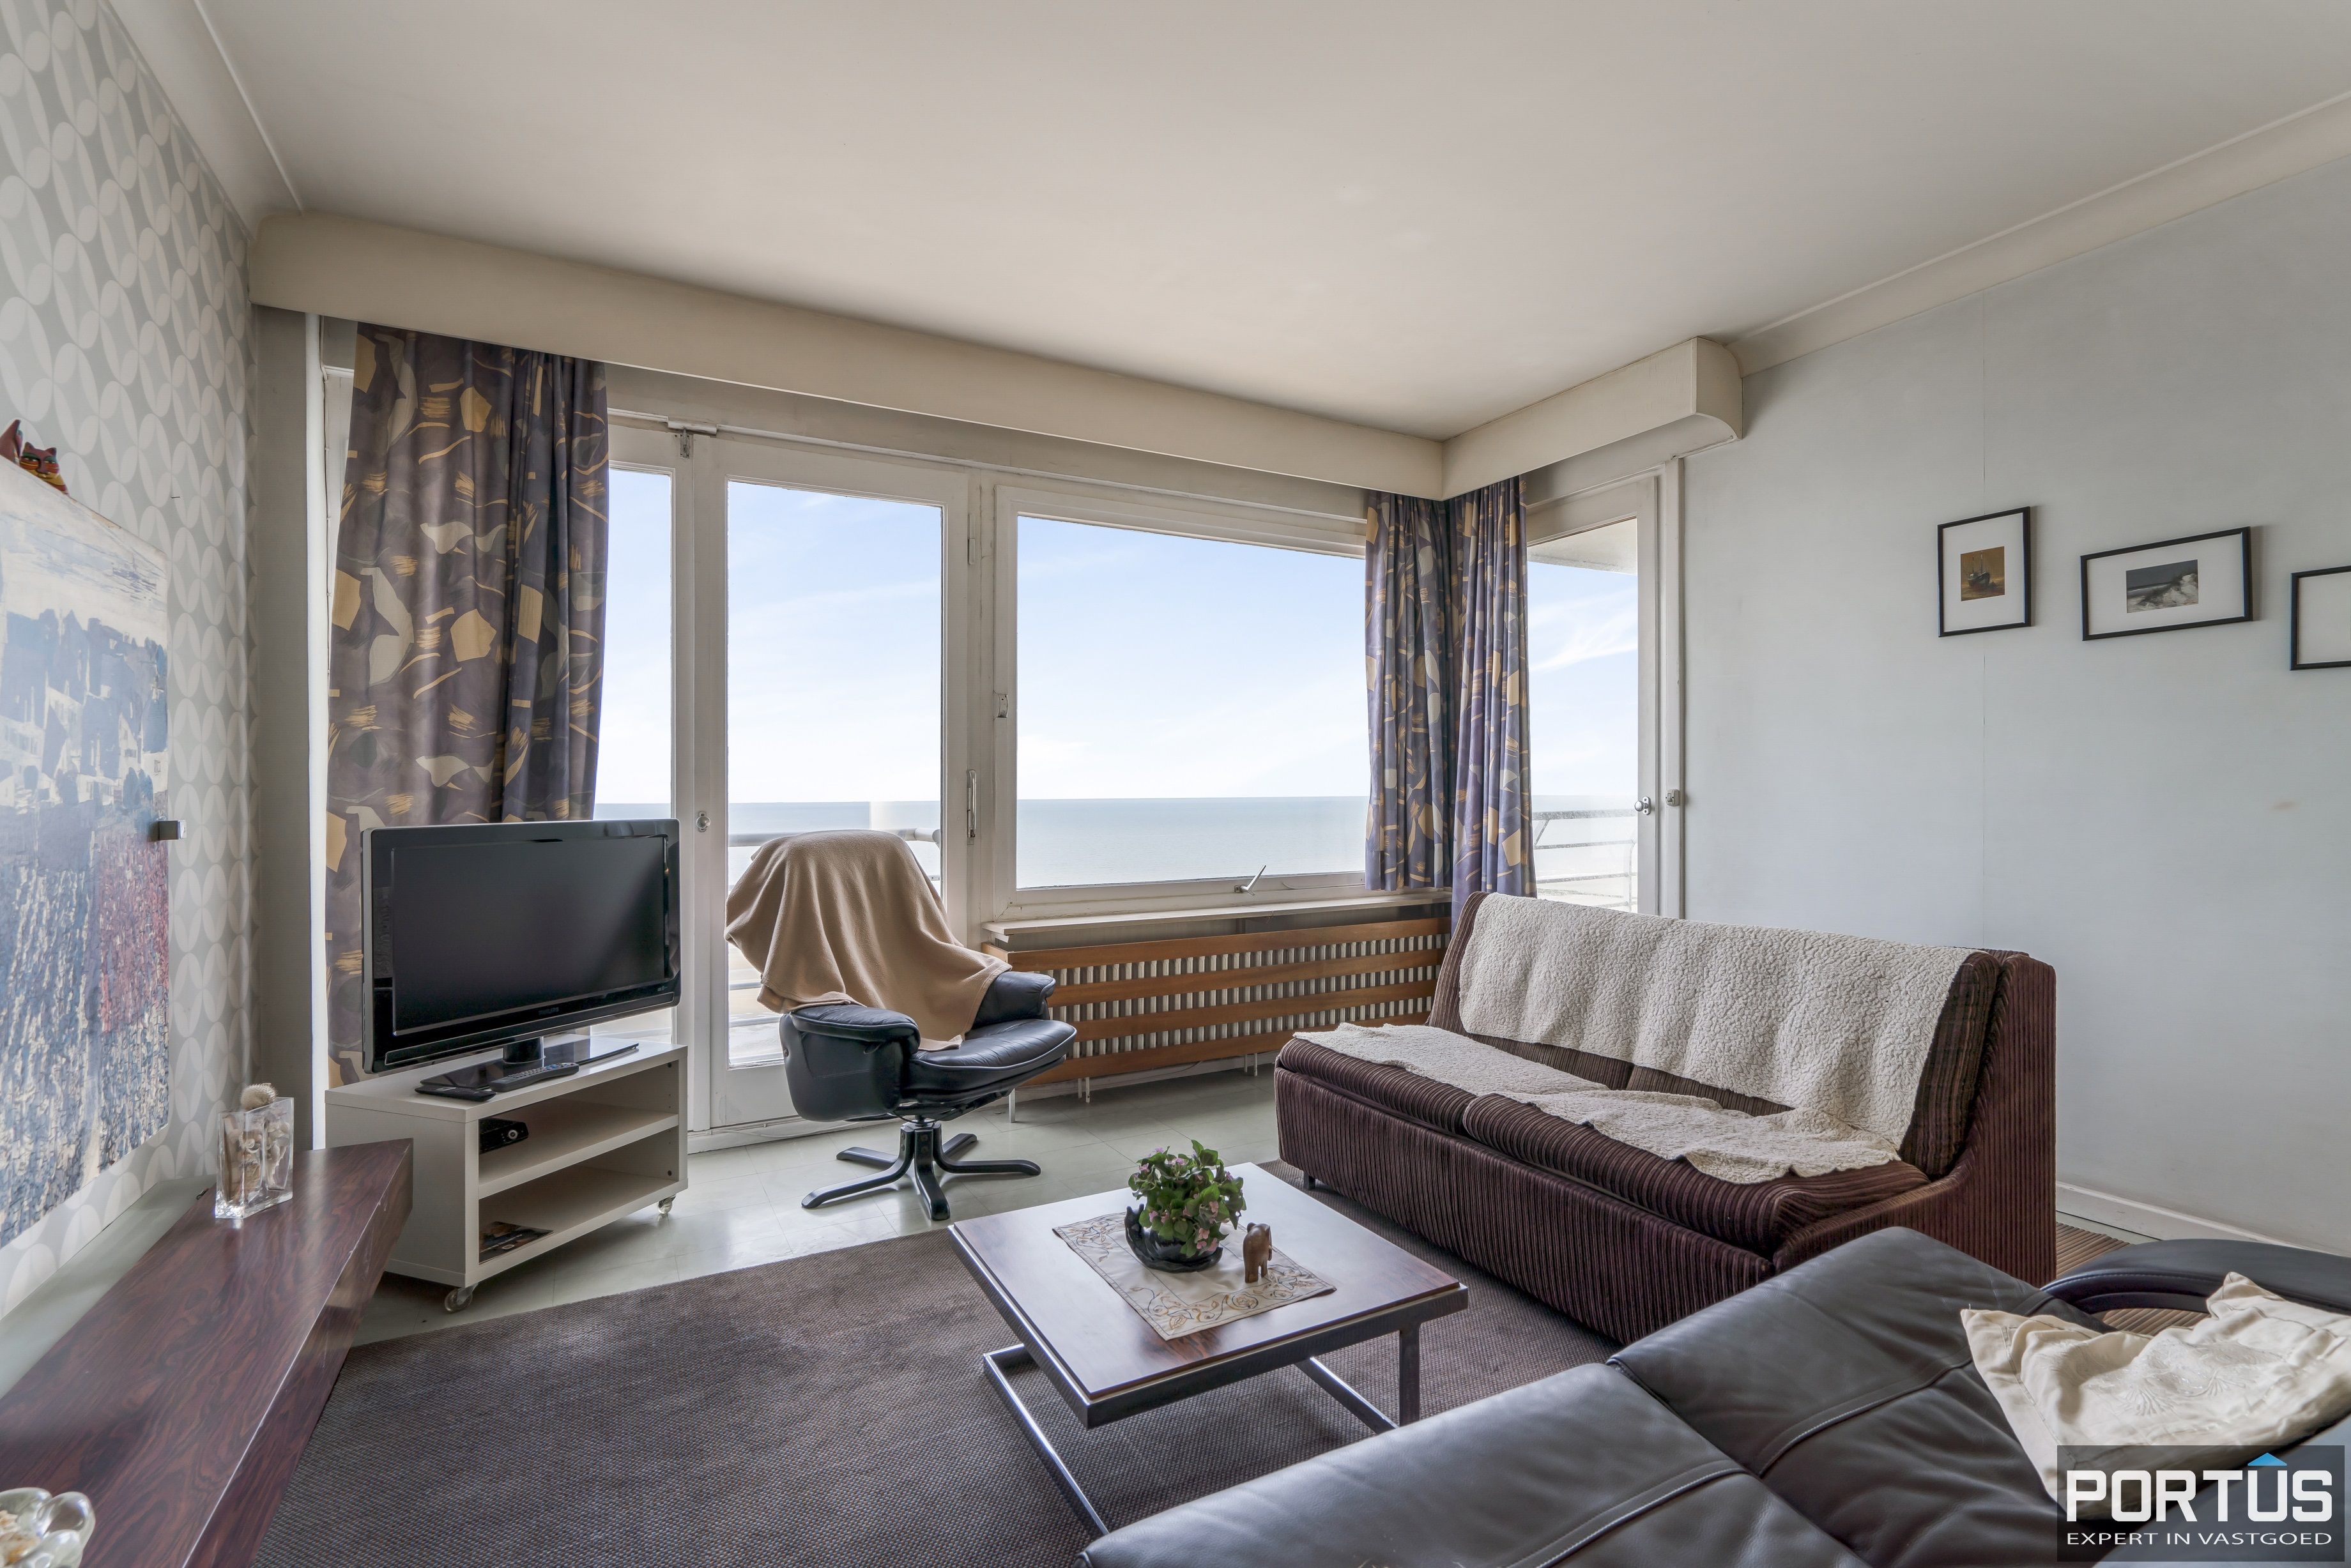 Appartement met 3 slaapkamers en frontaal zeezicht te koop te Nieuwpoort-Bad - 14260